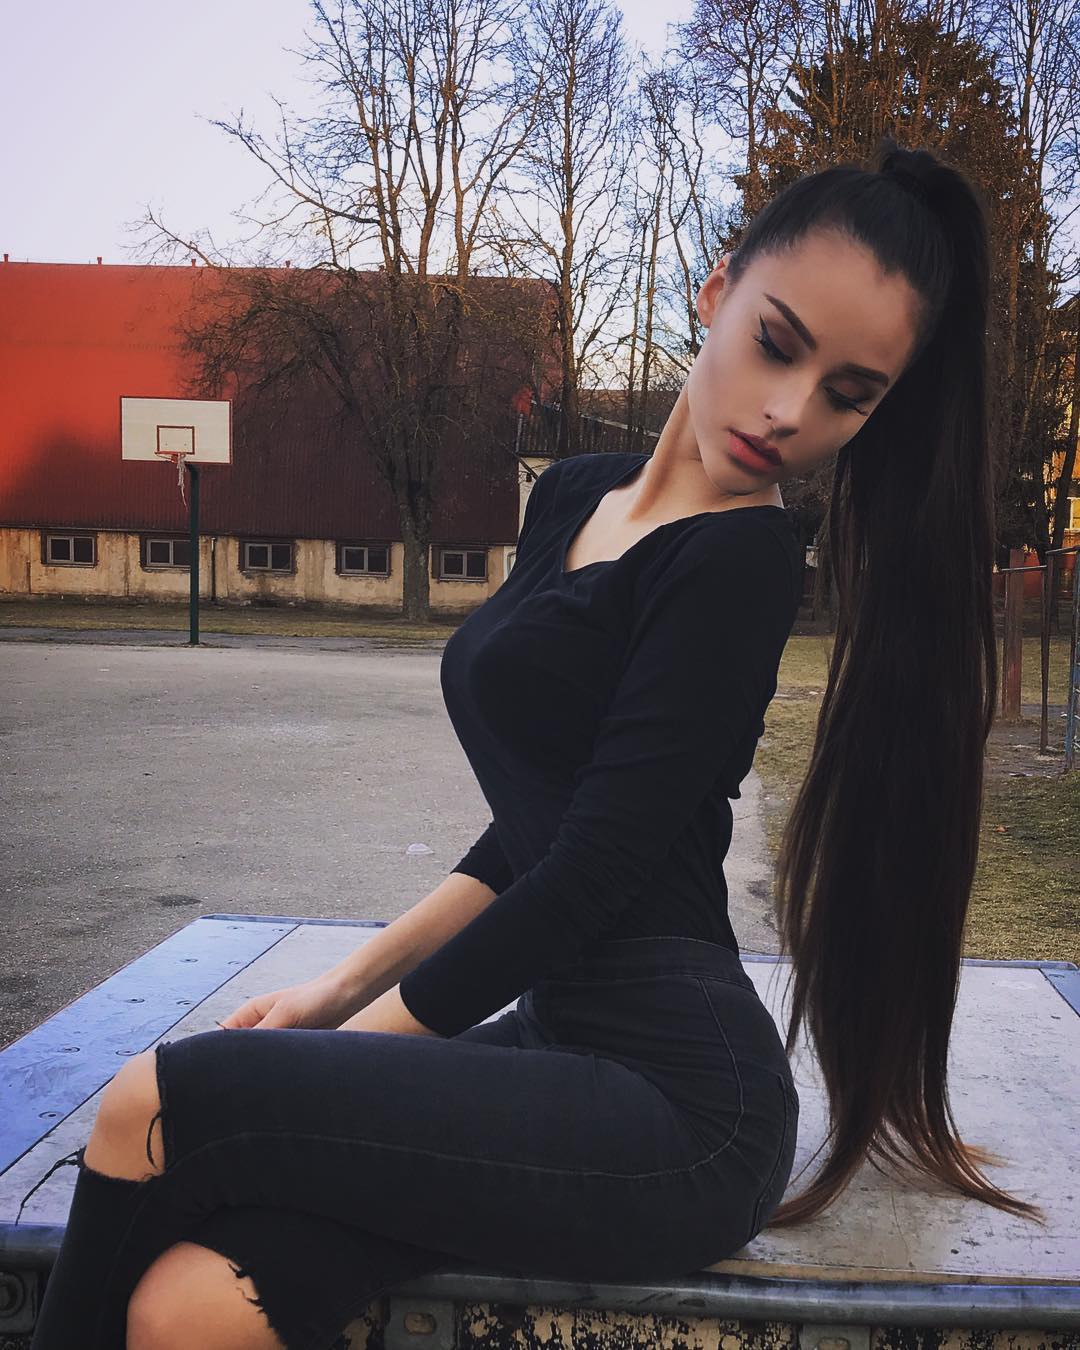 Viktorija jukonyte 18 hottest pics, viktorija jukonyte 18 instagram